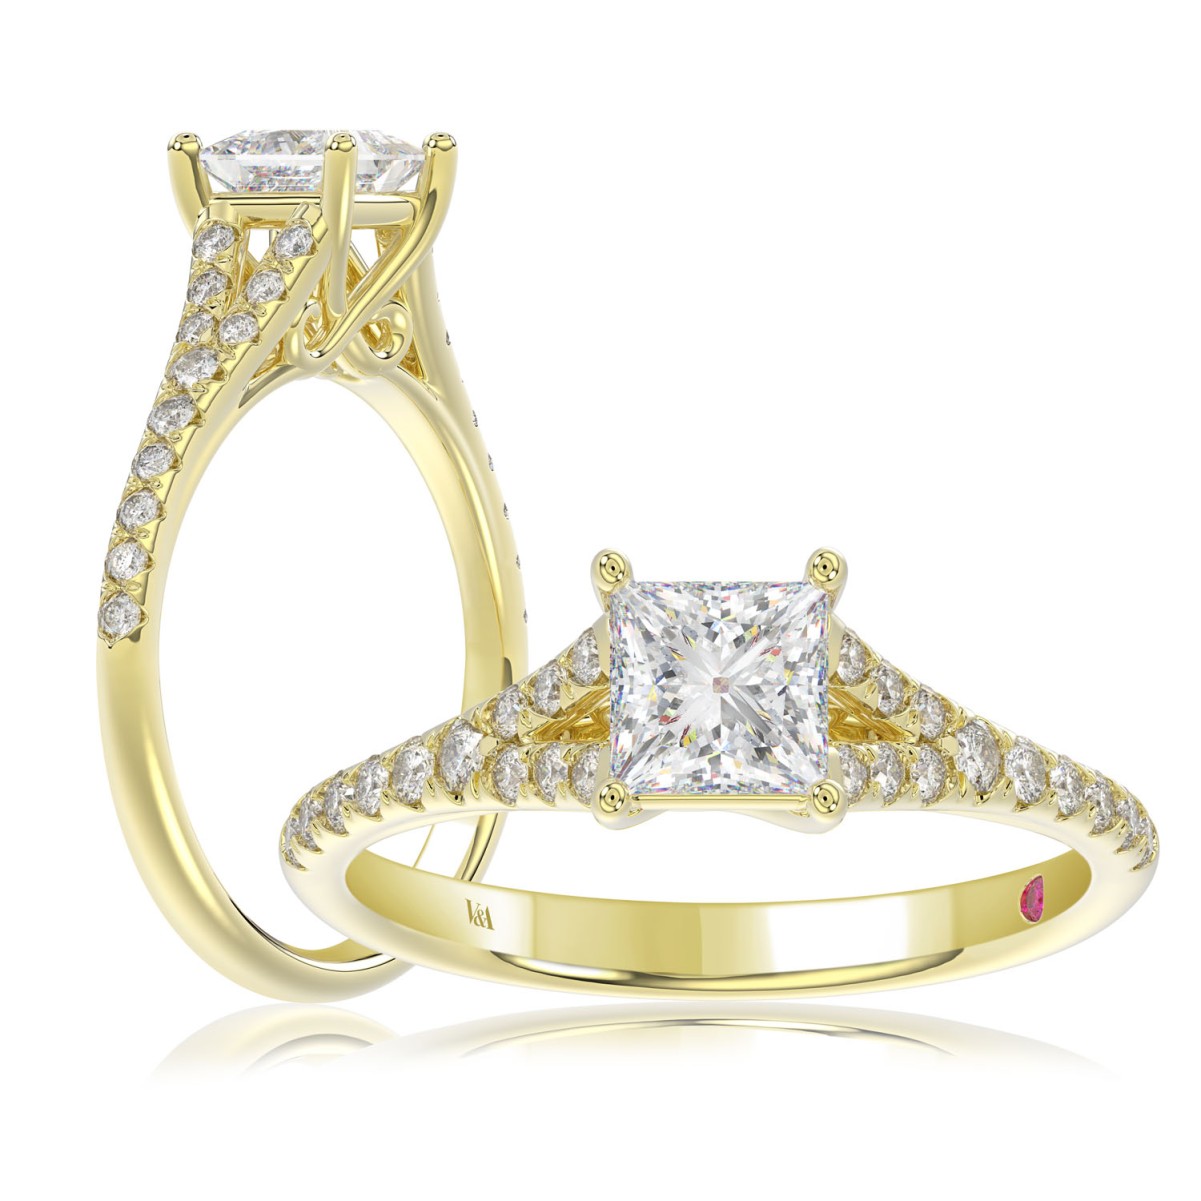 18K YELLOW GOLD 1CT ROUND/PRINCESS DIAMOND LADIES RING (CENTER STONE PRINCESS DIAMOND 3/4CT)